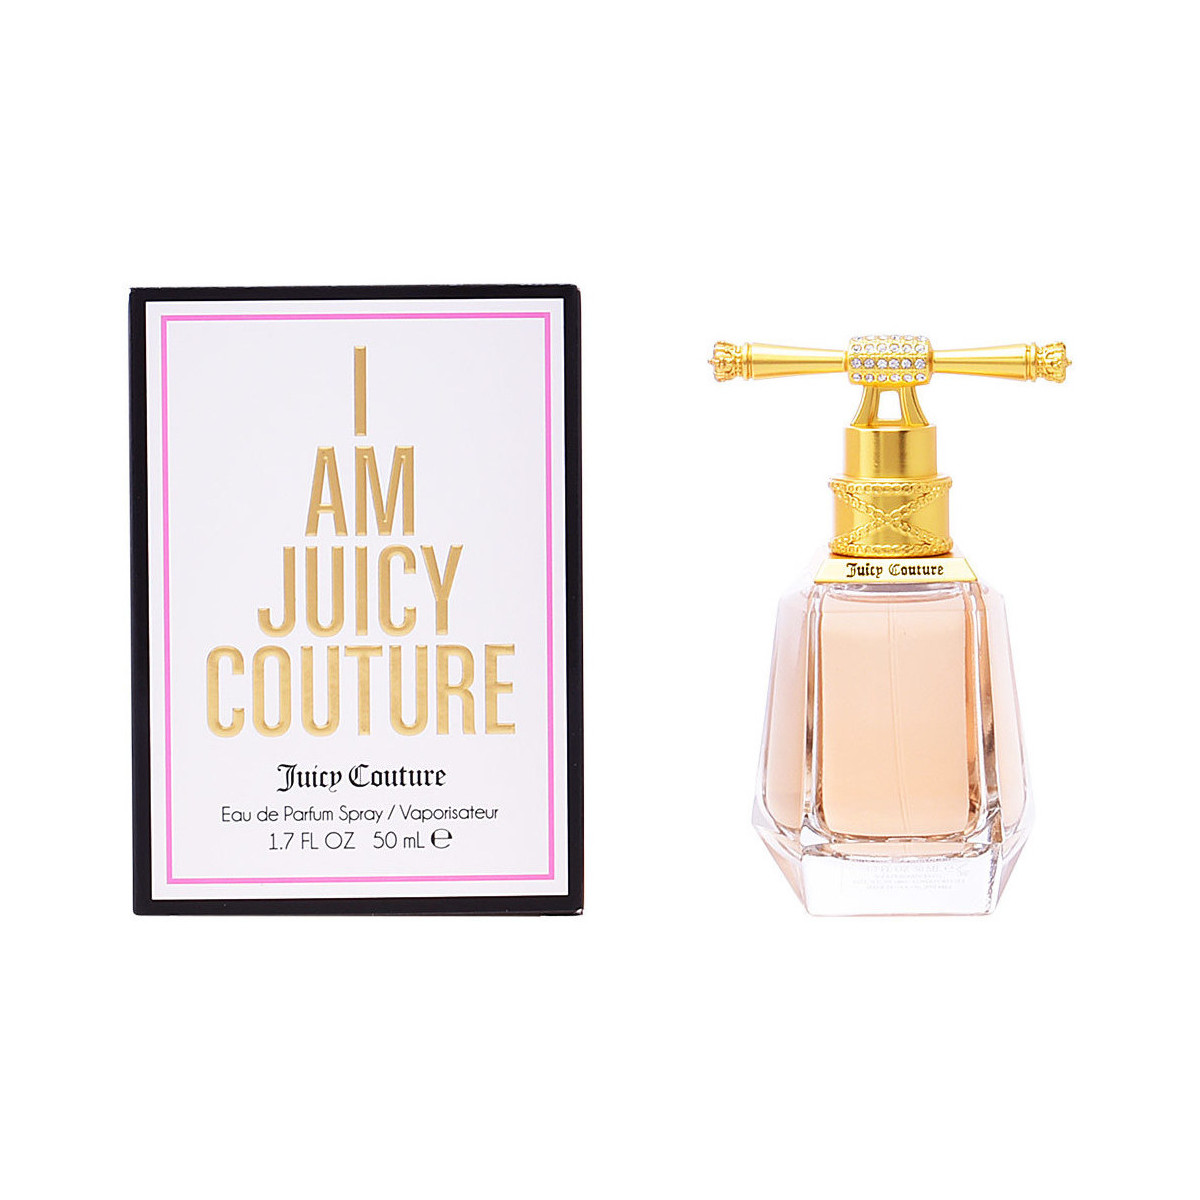 Beauté Femme Eau de parfum Juicy Couture I Am  Eau De Parfum Vaporisateur 